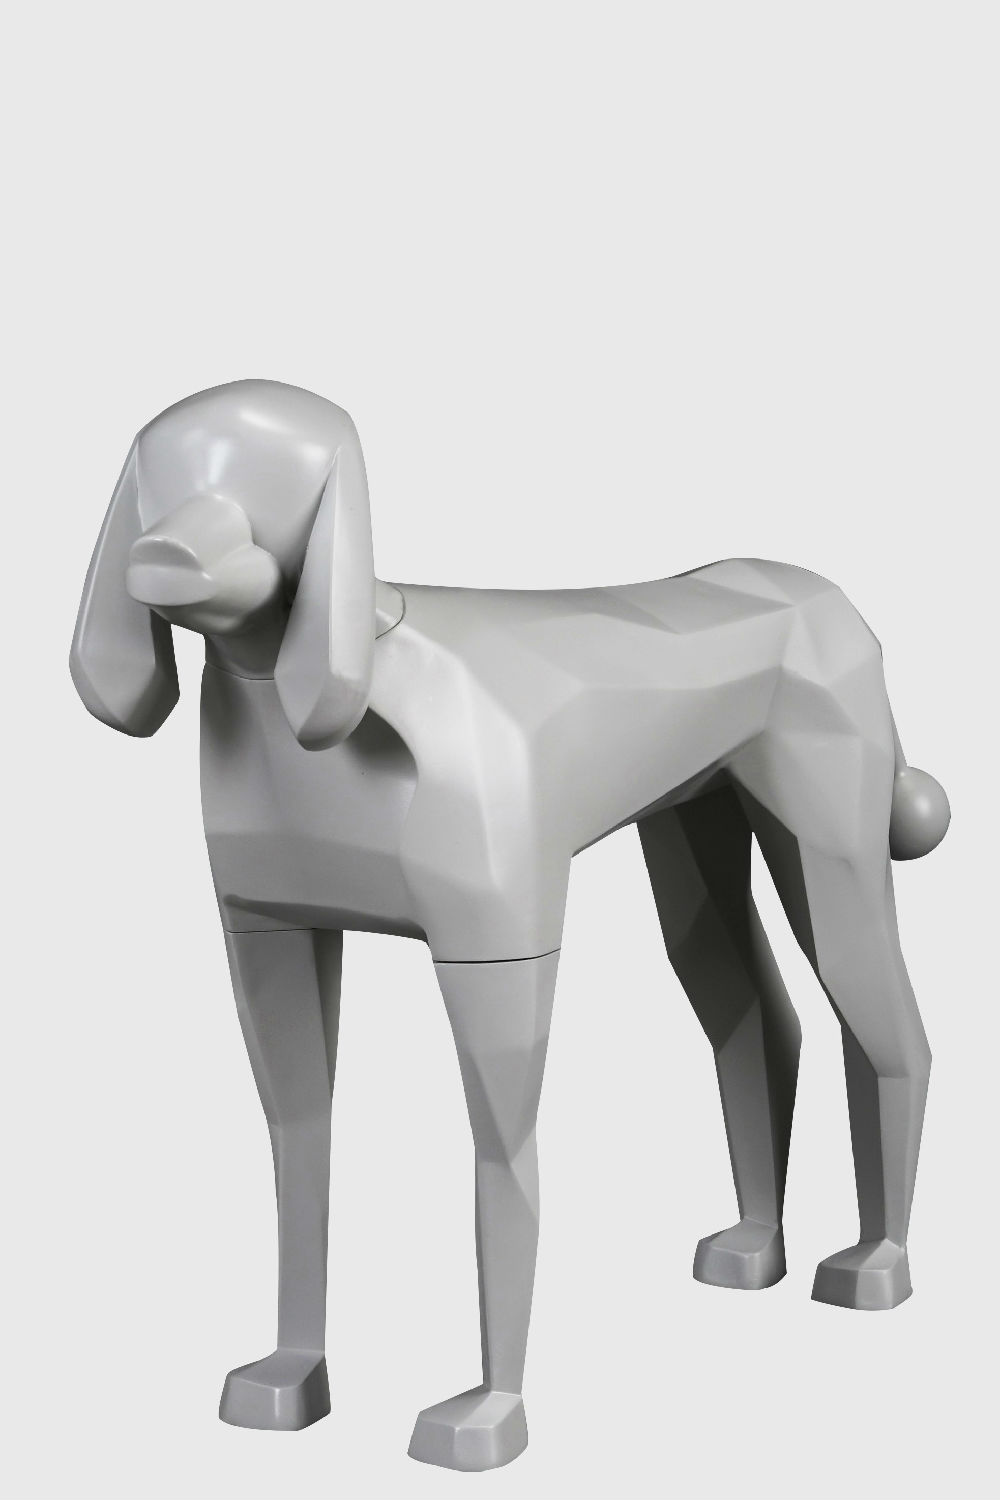 玻璃钢哑光色狗模型展示道具-barboncina